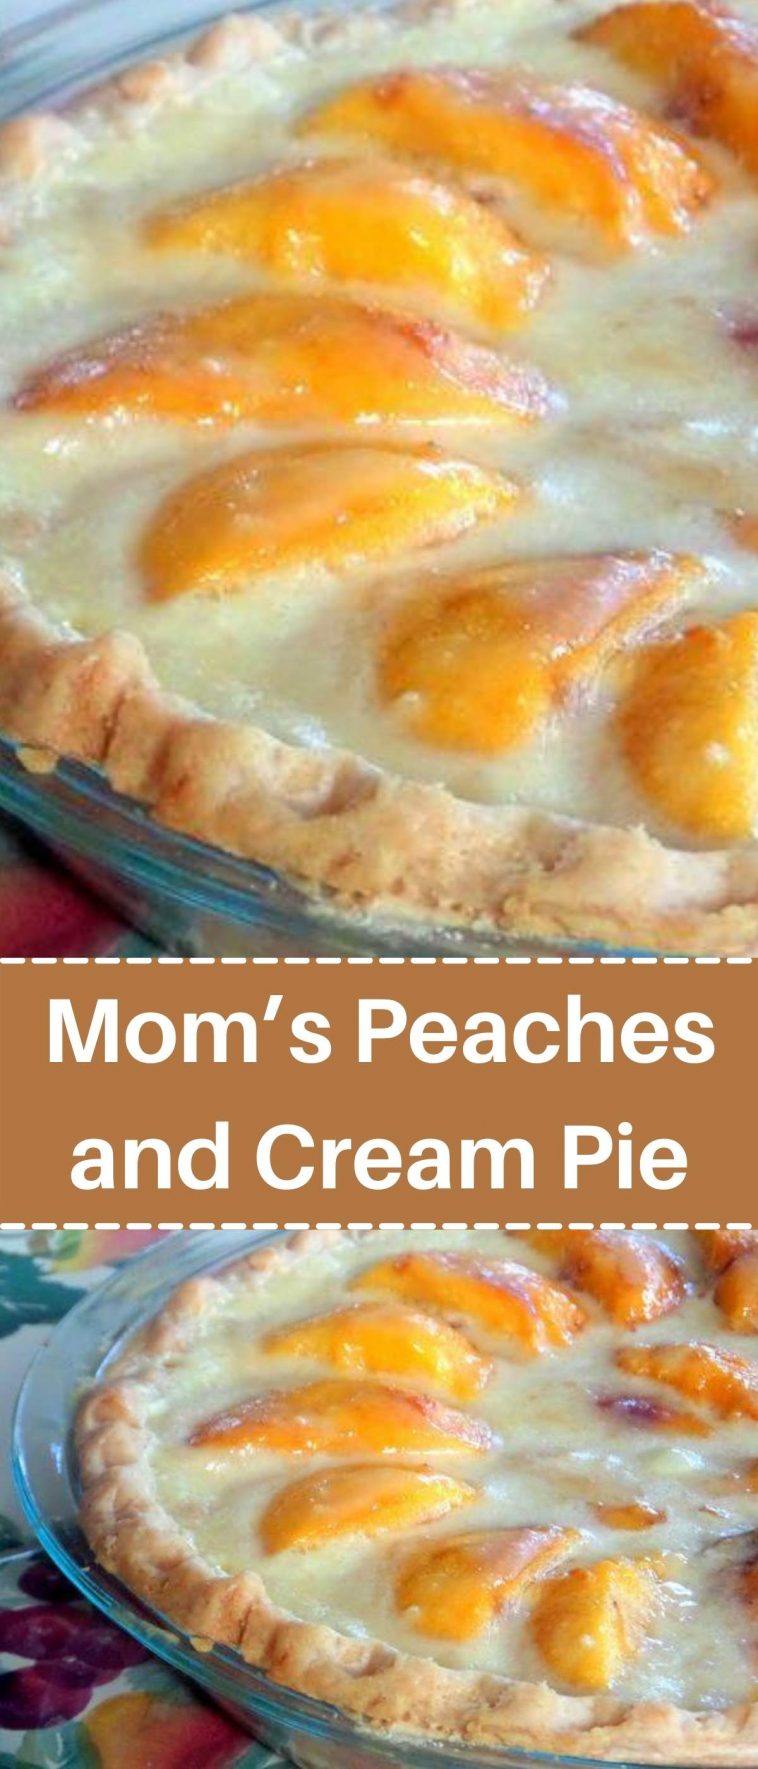 Mom’s Peaches and Cream Pie